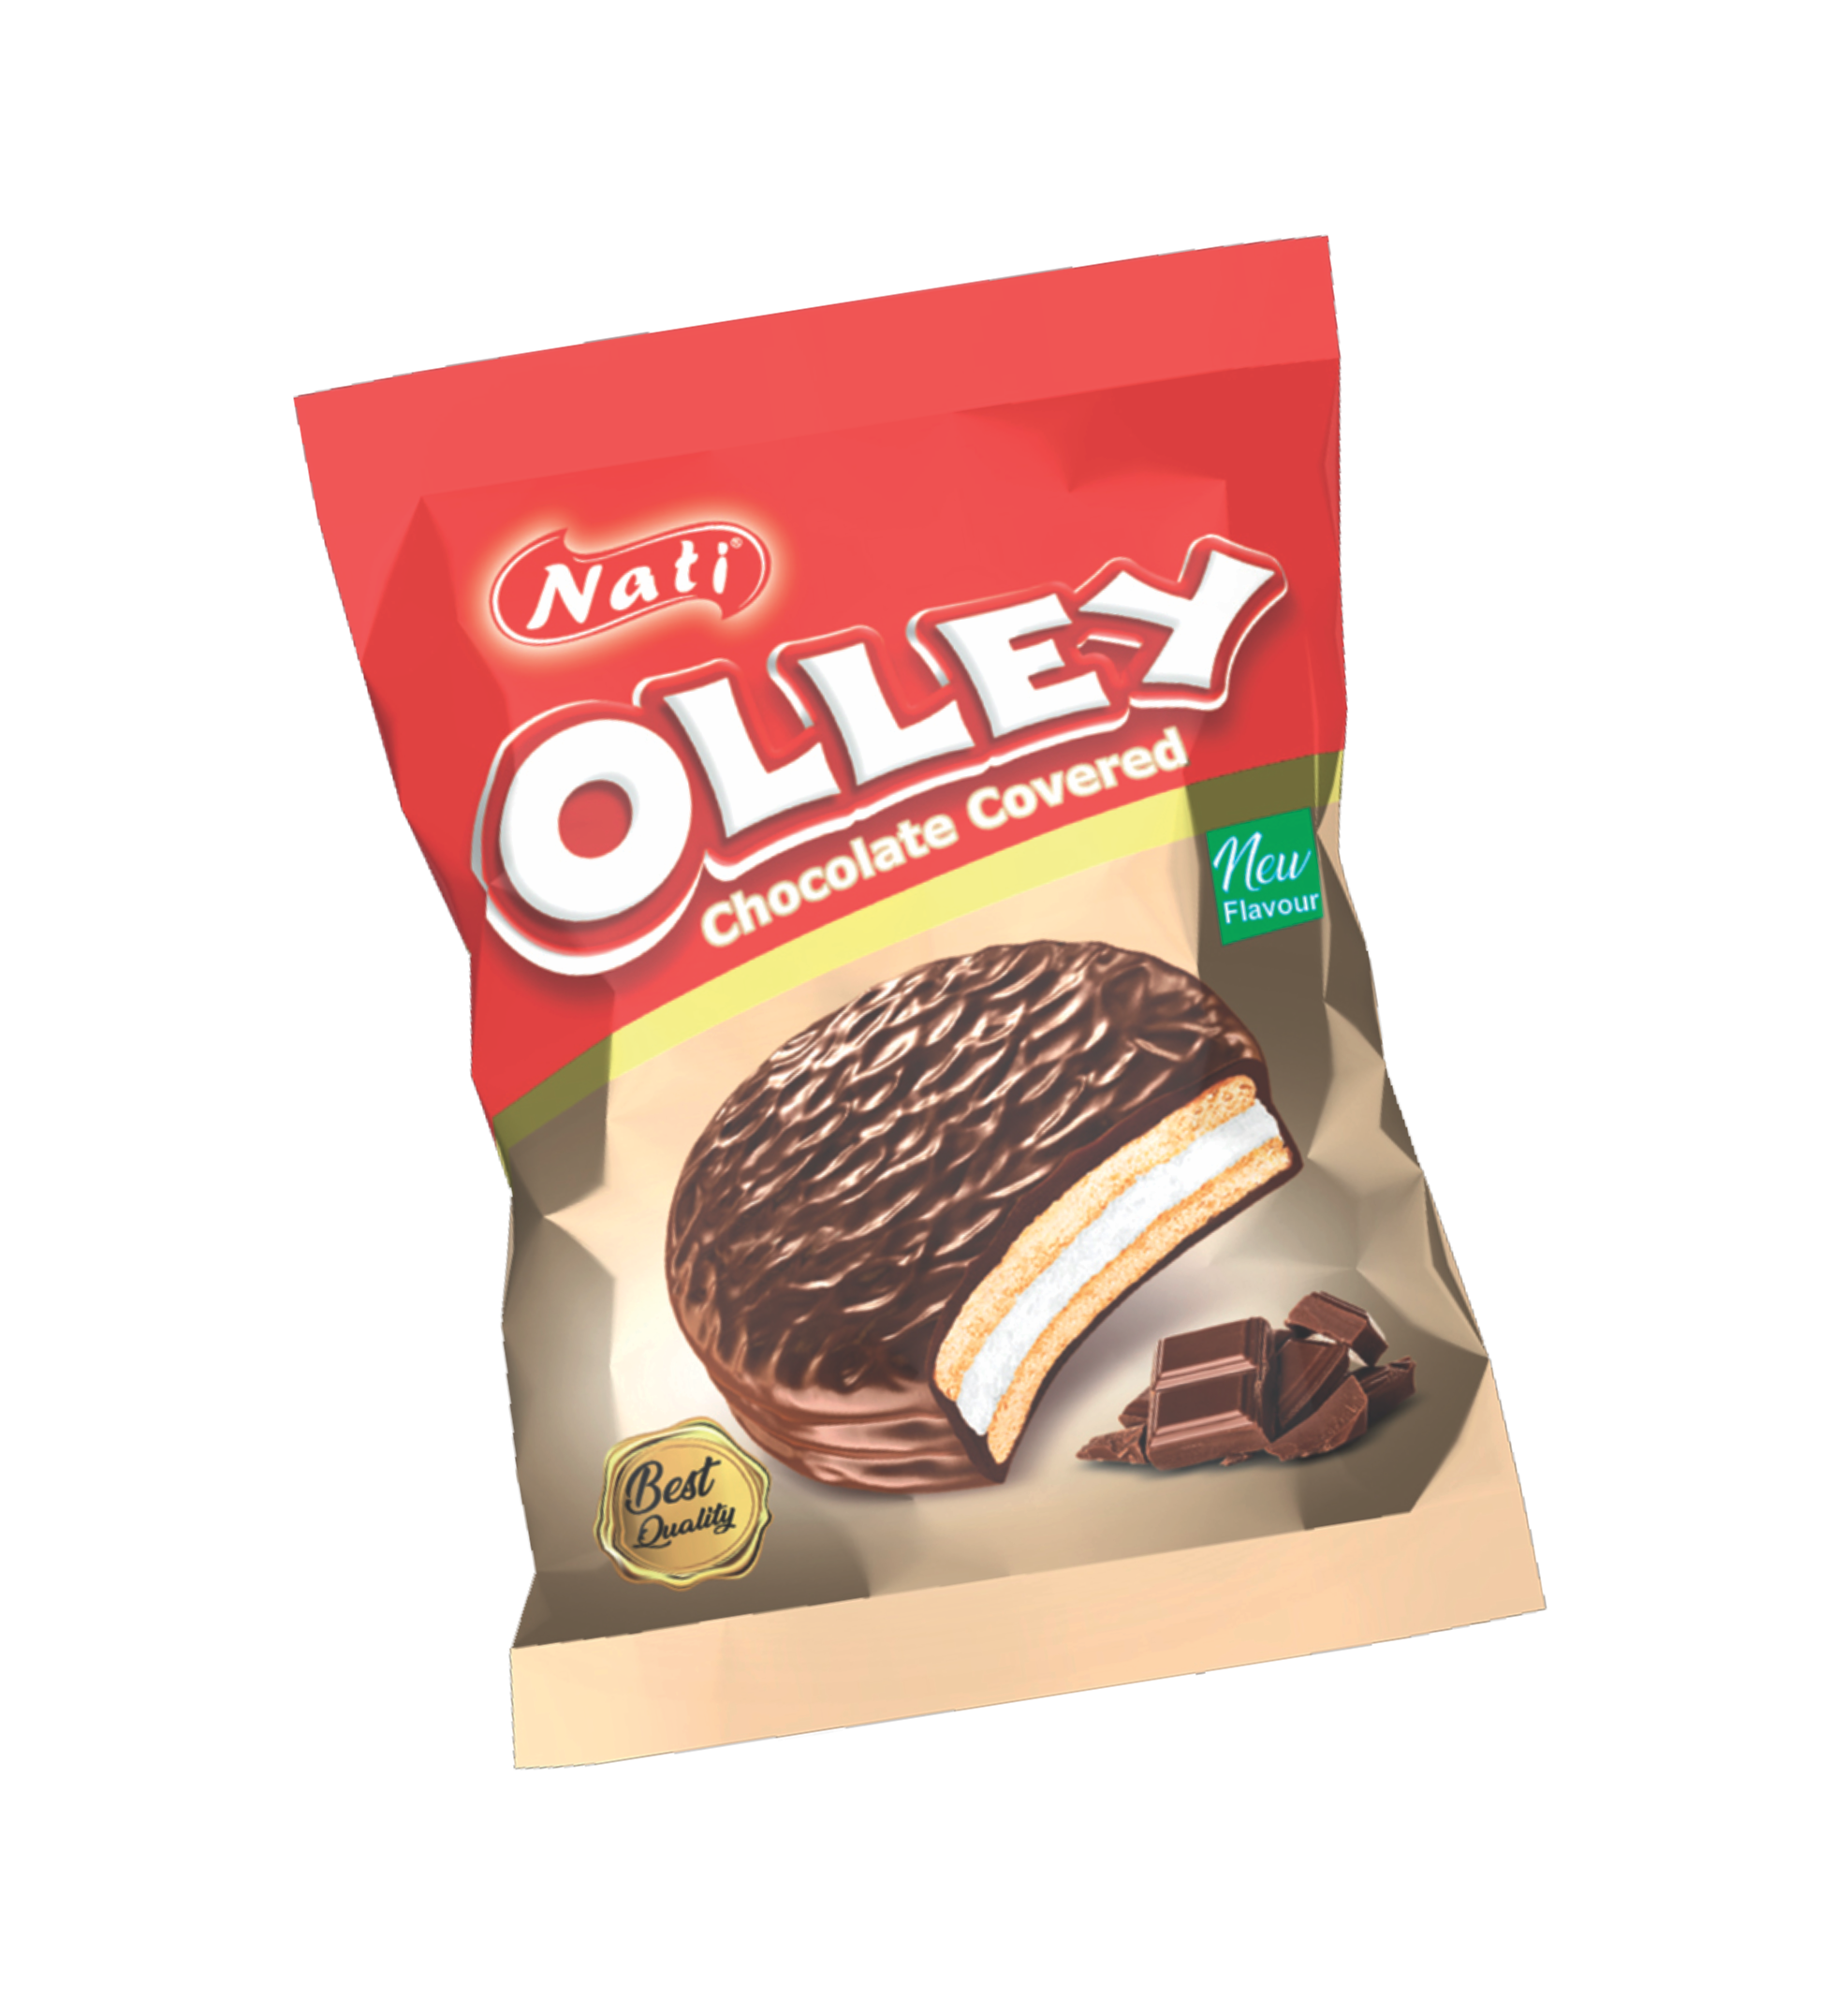 البسكويت  "OLLEY" بالشوكولاتة